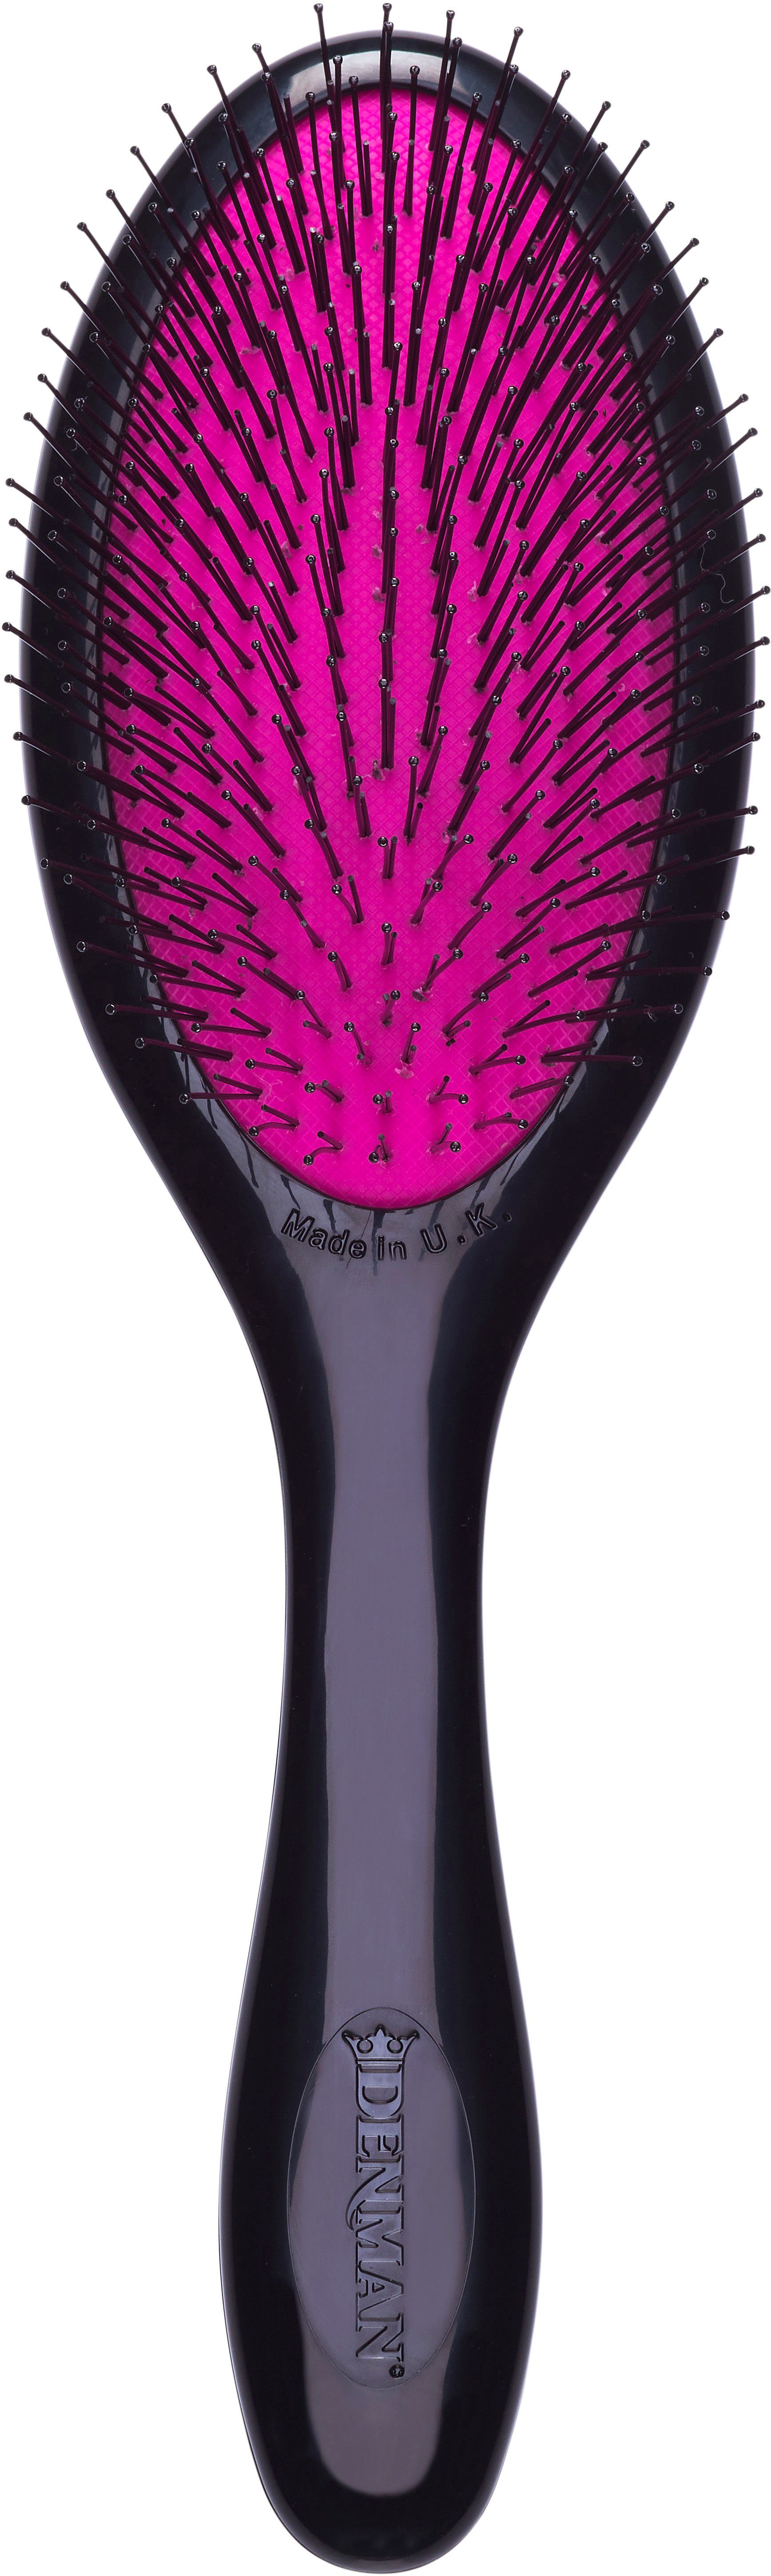 Haarbürste feines Kinderhaar für Entwirrungsbürste Tangle speziell Haar schwarz-pink und Tamer Gentle, DENMAN D93M